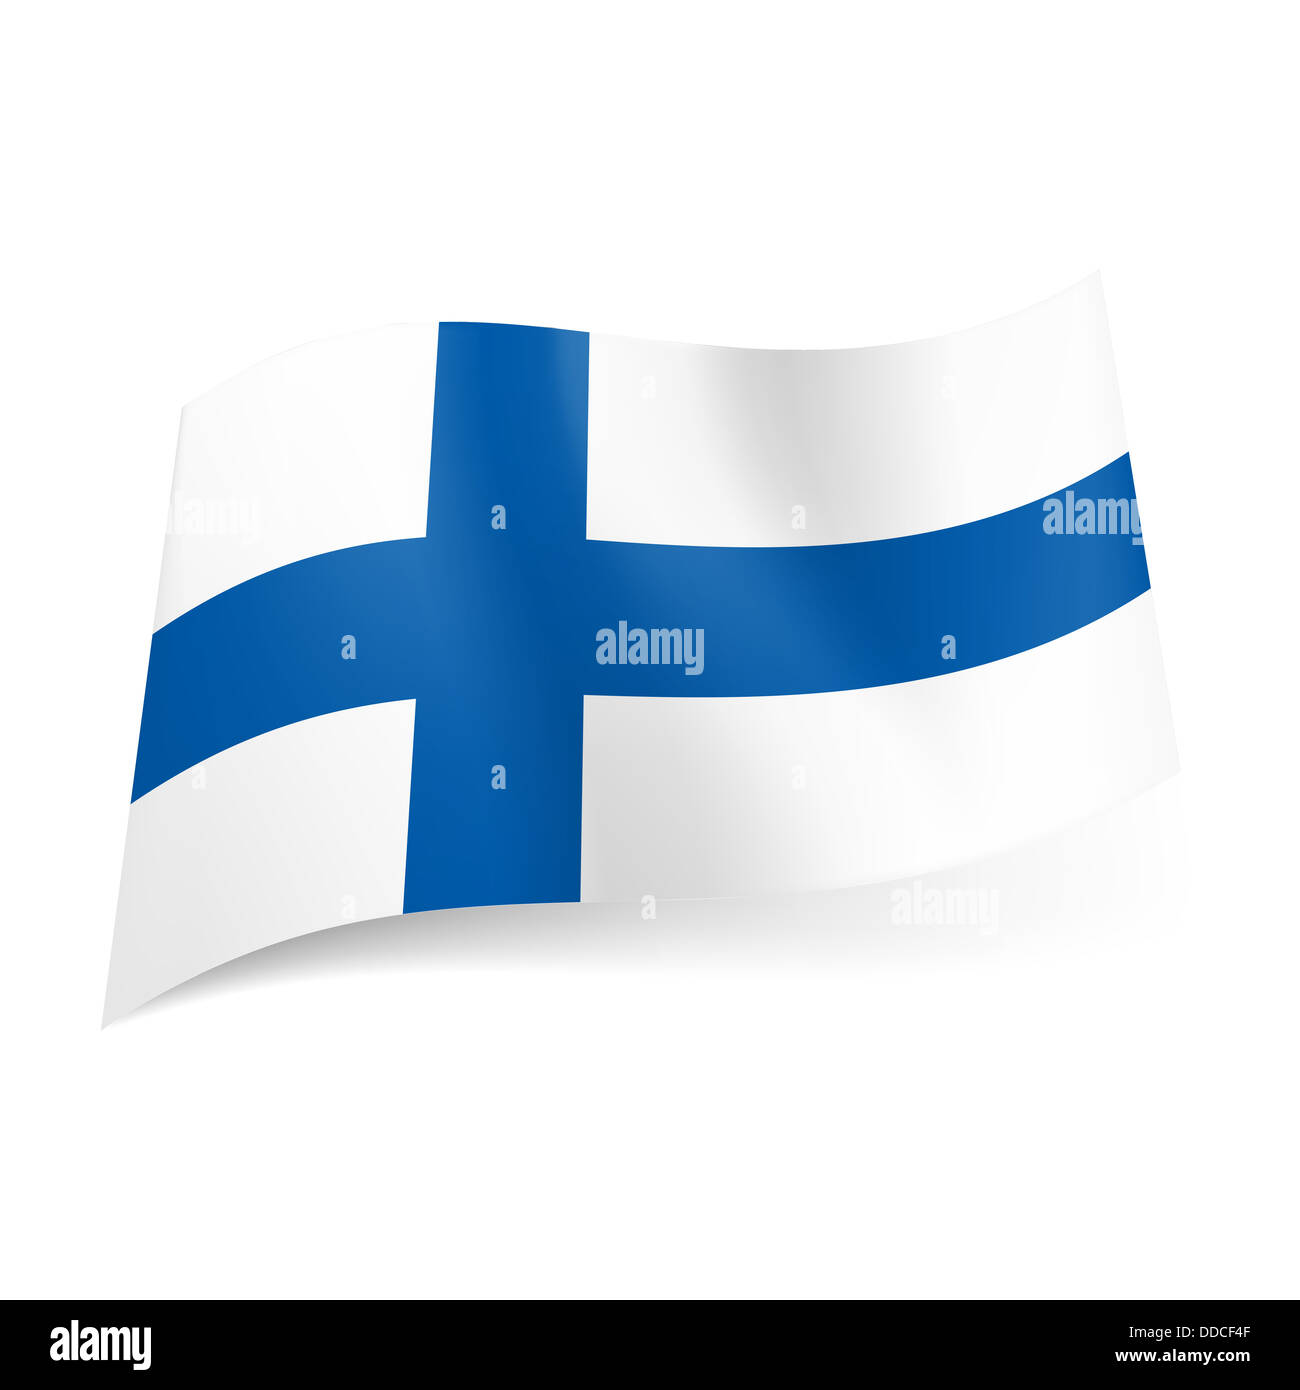 Repressalier sporadisk fest National flag of Finland: blue cross on white background Stock Photo - Alamy